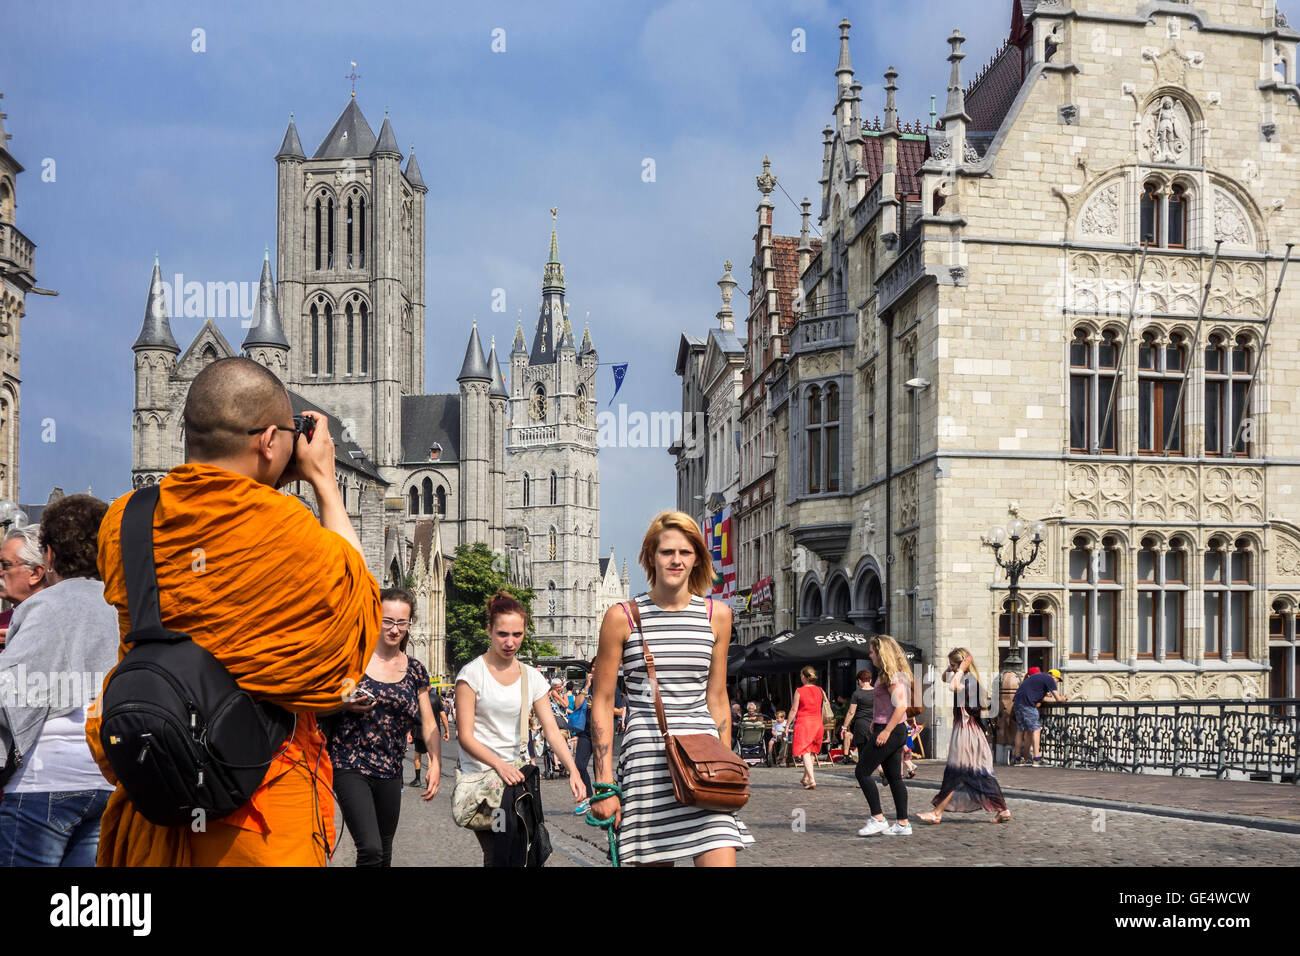 Buddhistischer Mönch gekleidet in orange Gewand, die Bilder von der St.-Nikolaus Kirche und der Glockenturm in der Stadt Gent, Belgien Stockfoto